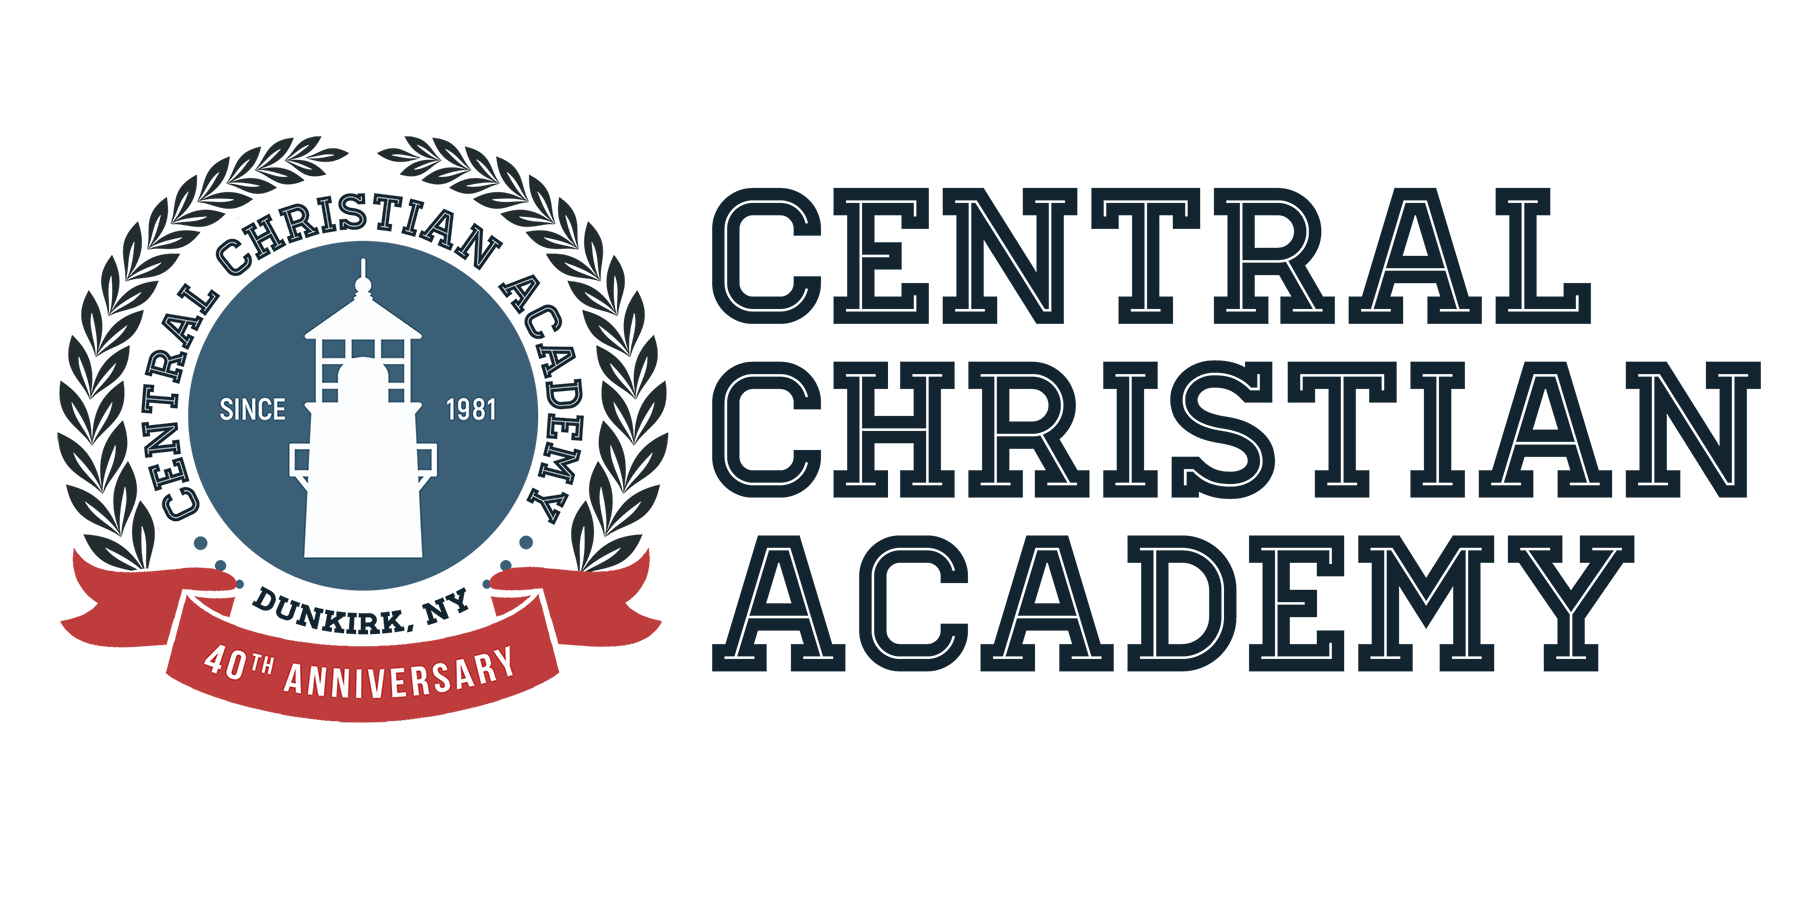 Central Christian Academy Logo